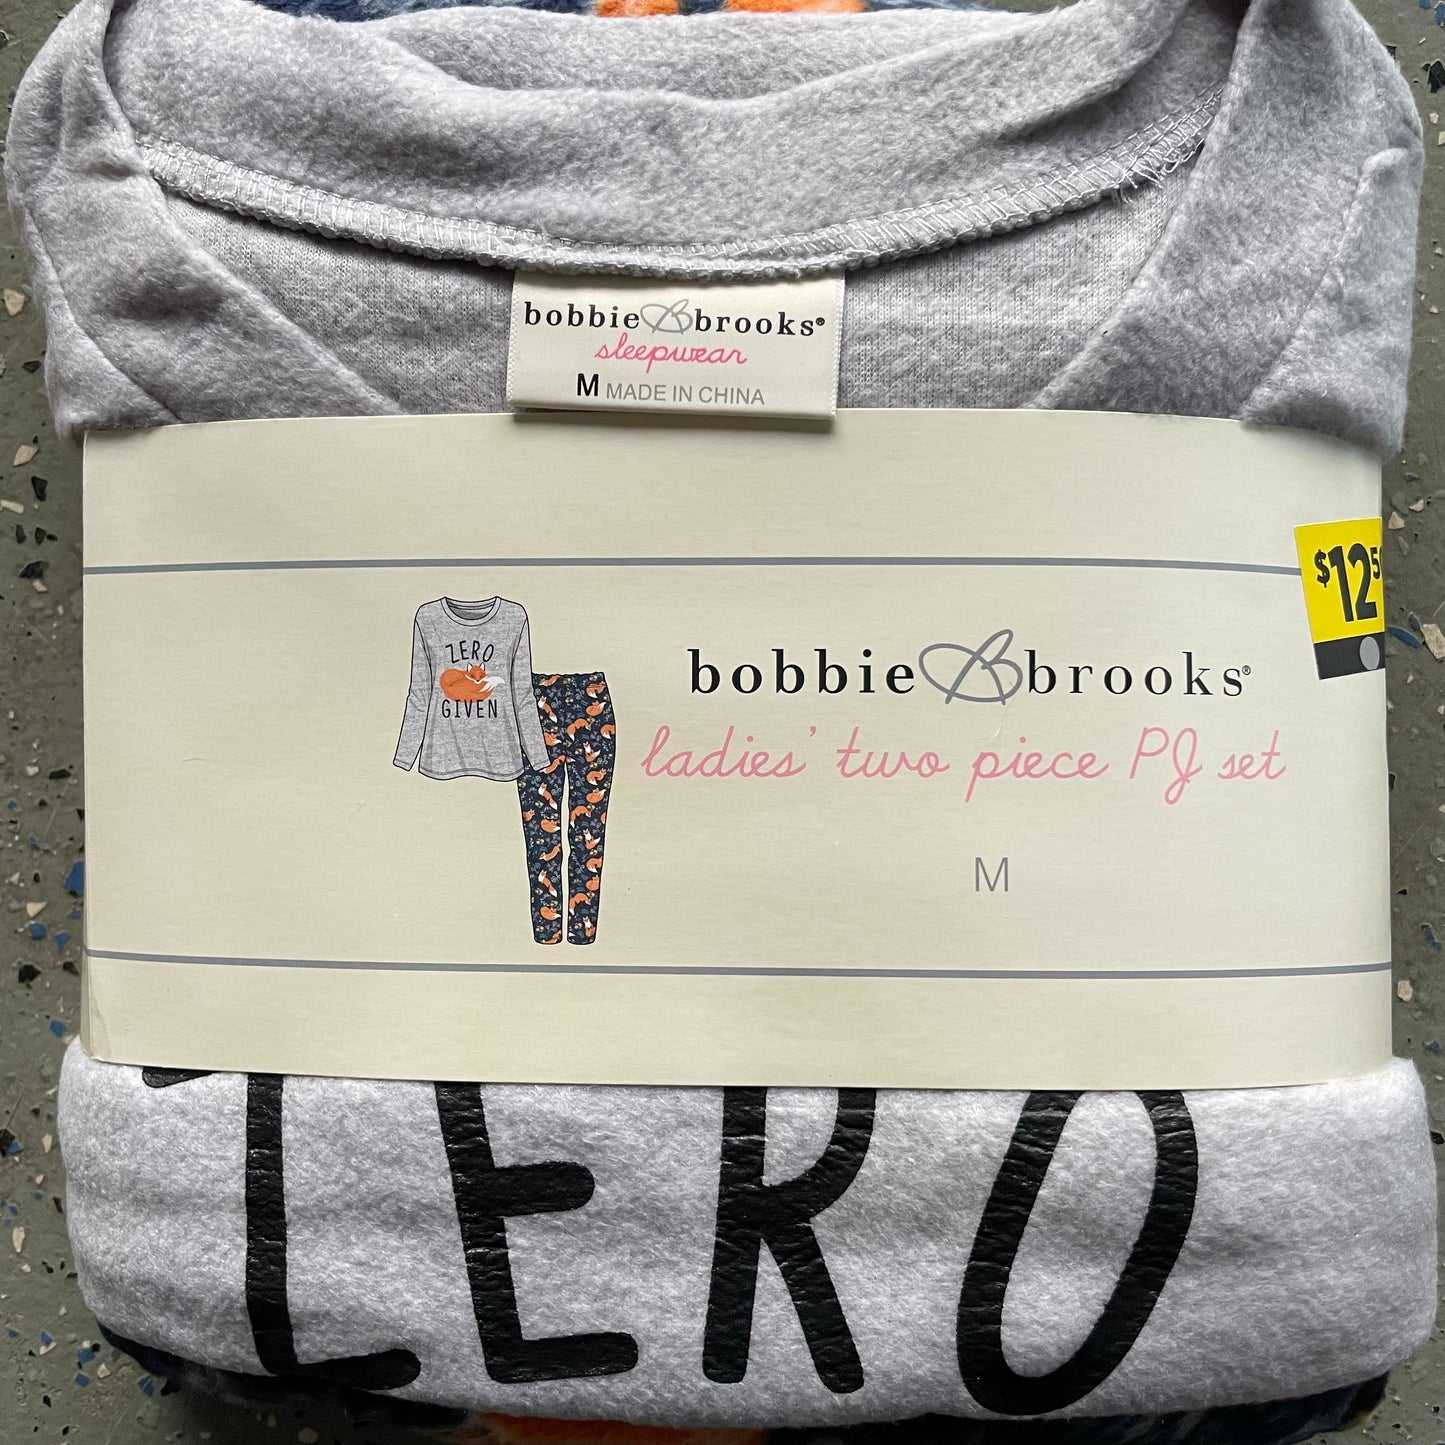 Bobbie brooks sleepwear size - Gem